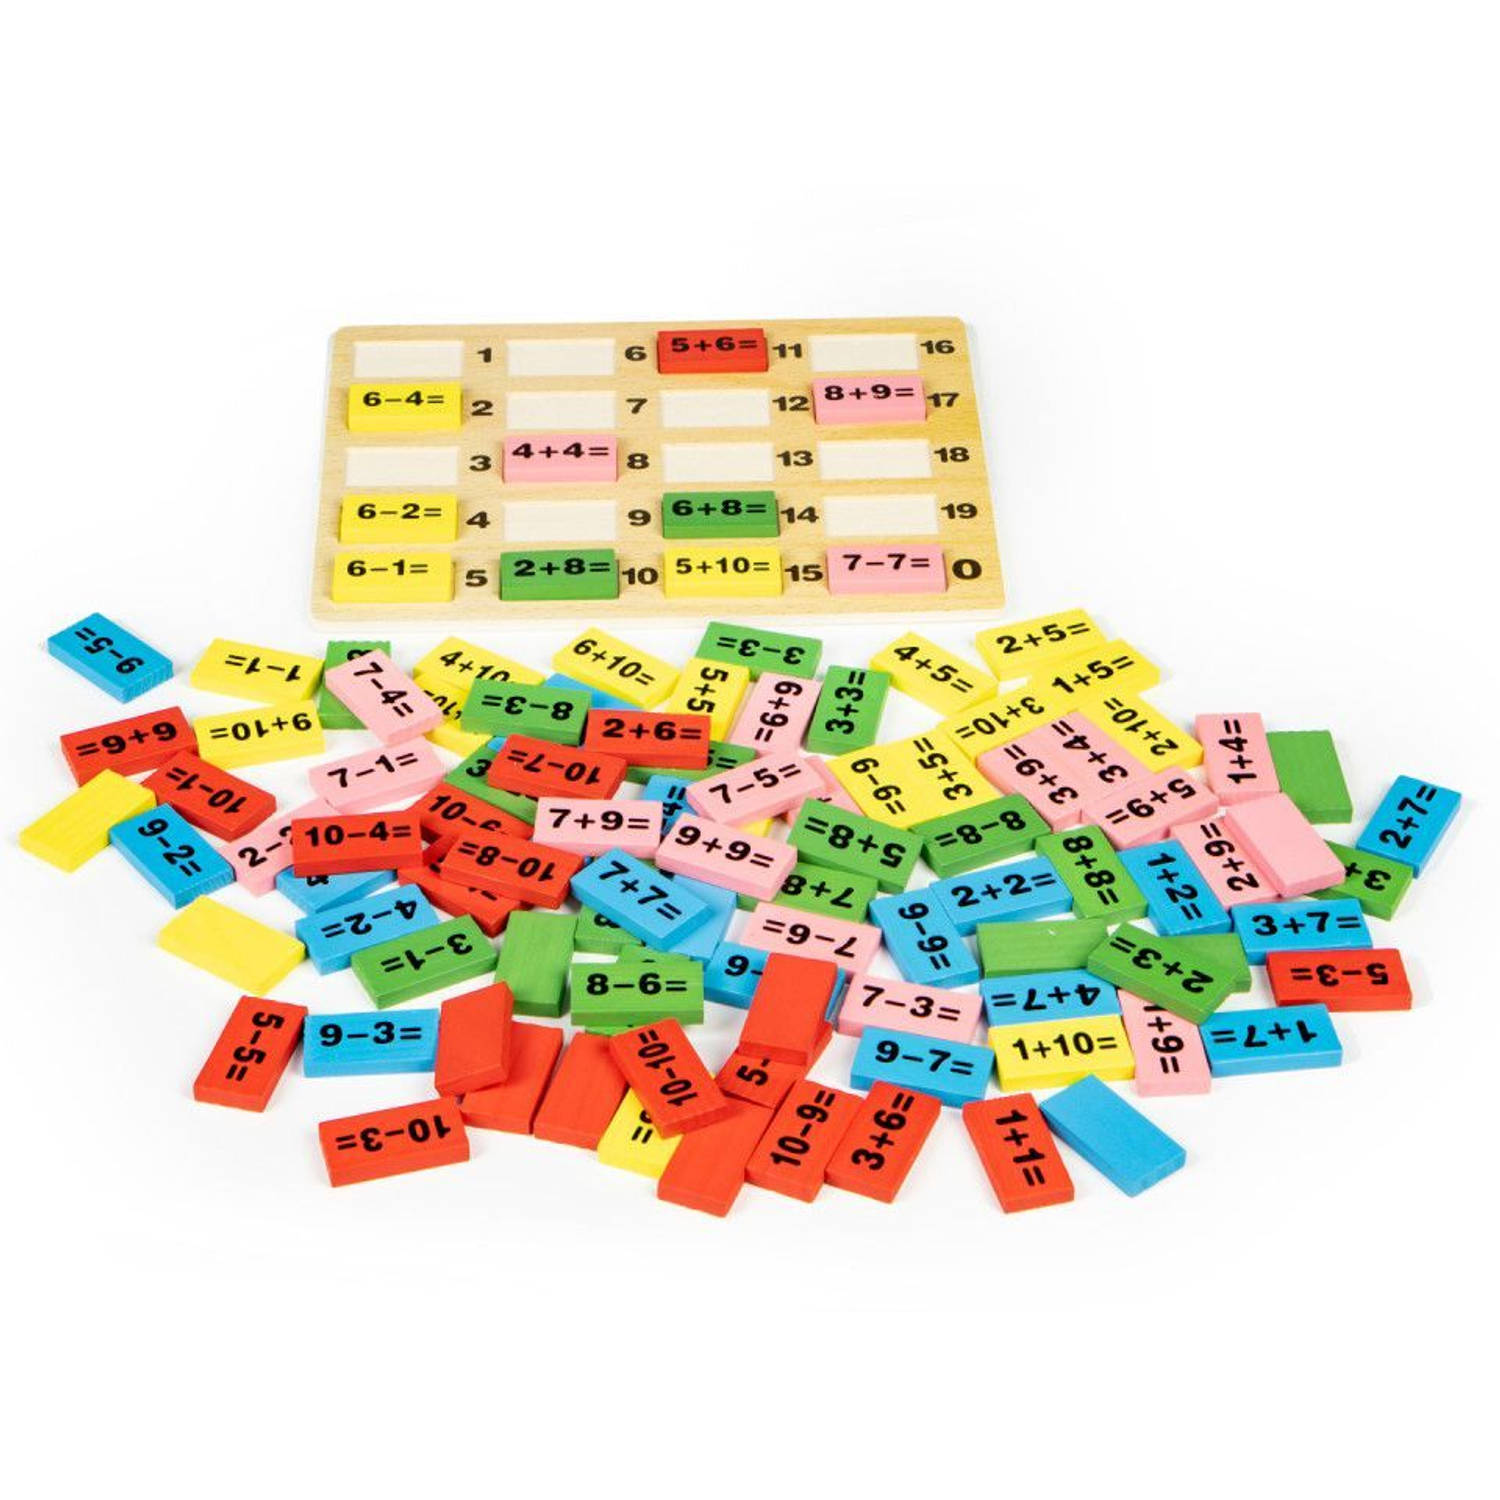 Ecotoys wiskundige blokken domino set - Leerzaam houten bord met gekleurde blokken voor kinderen vanaf 3 jaar - Educatief duurzaam speelgoed